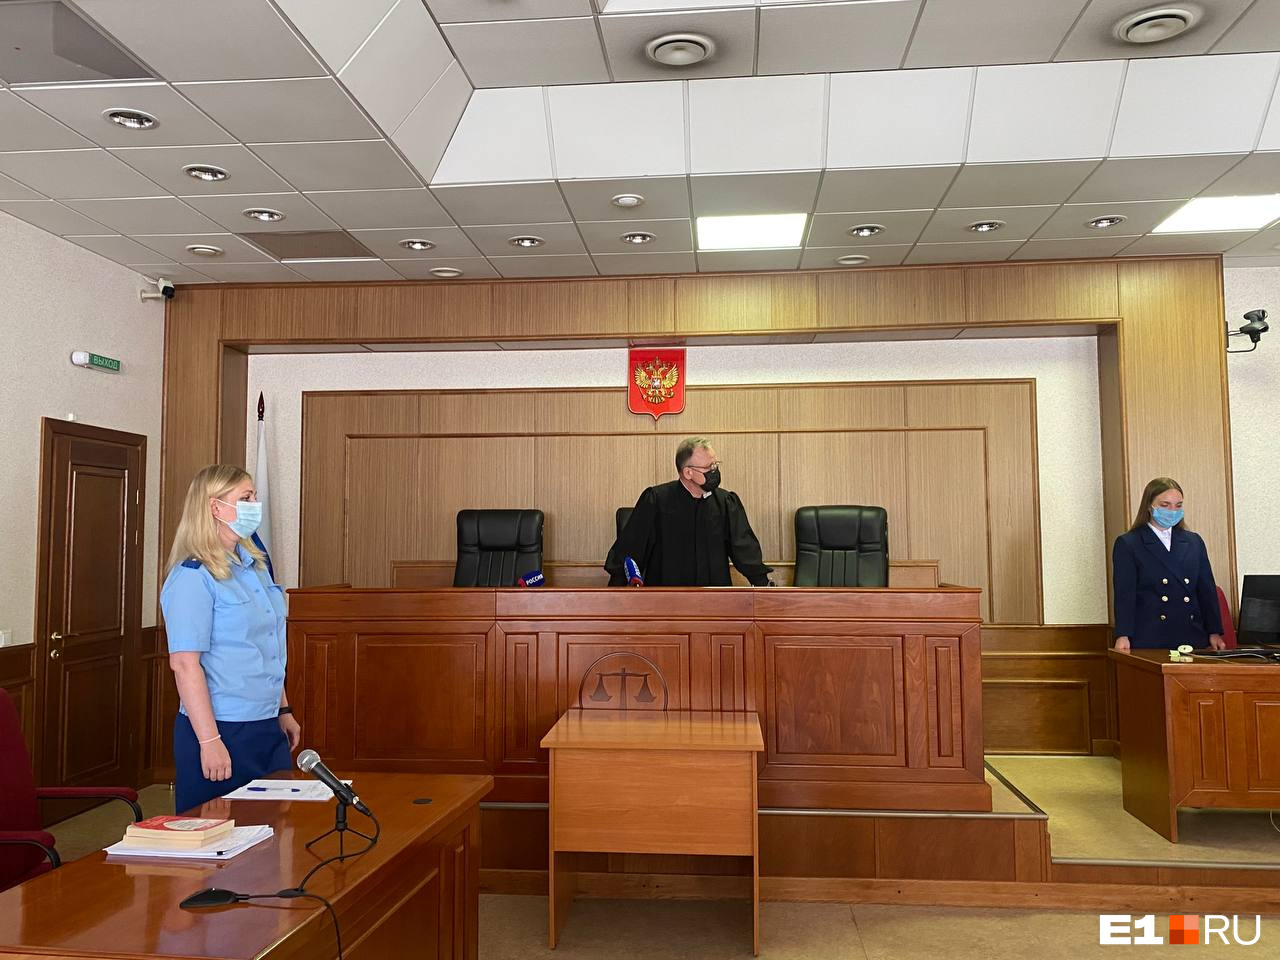 Представители прокуратуры возражали против освобождения Дмитрия Лошагина, но судья Валерий Шмаков решил дать ему шанс